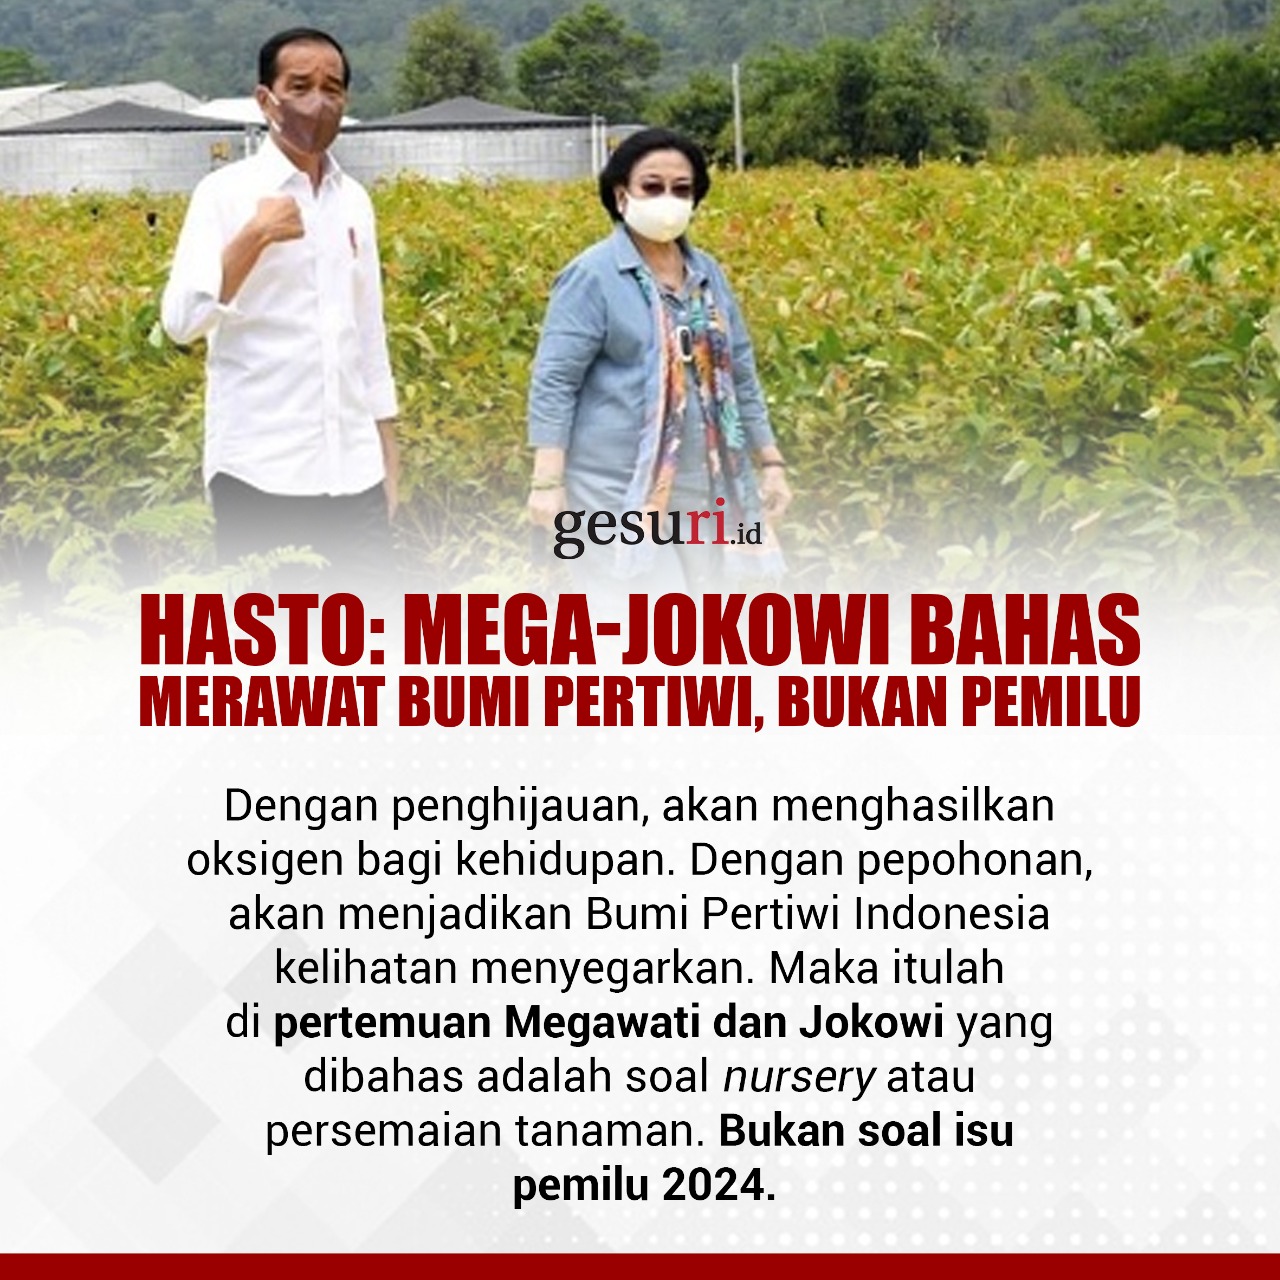 Mega-Jokowi Bahas Merawat Bumi Pertiwi, Bukan Pemilu (4/4)